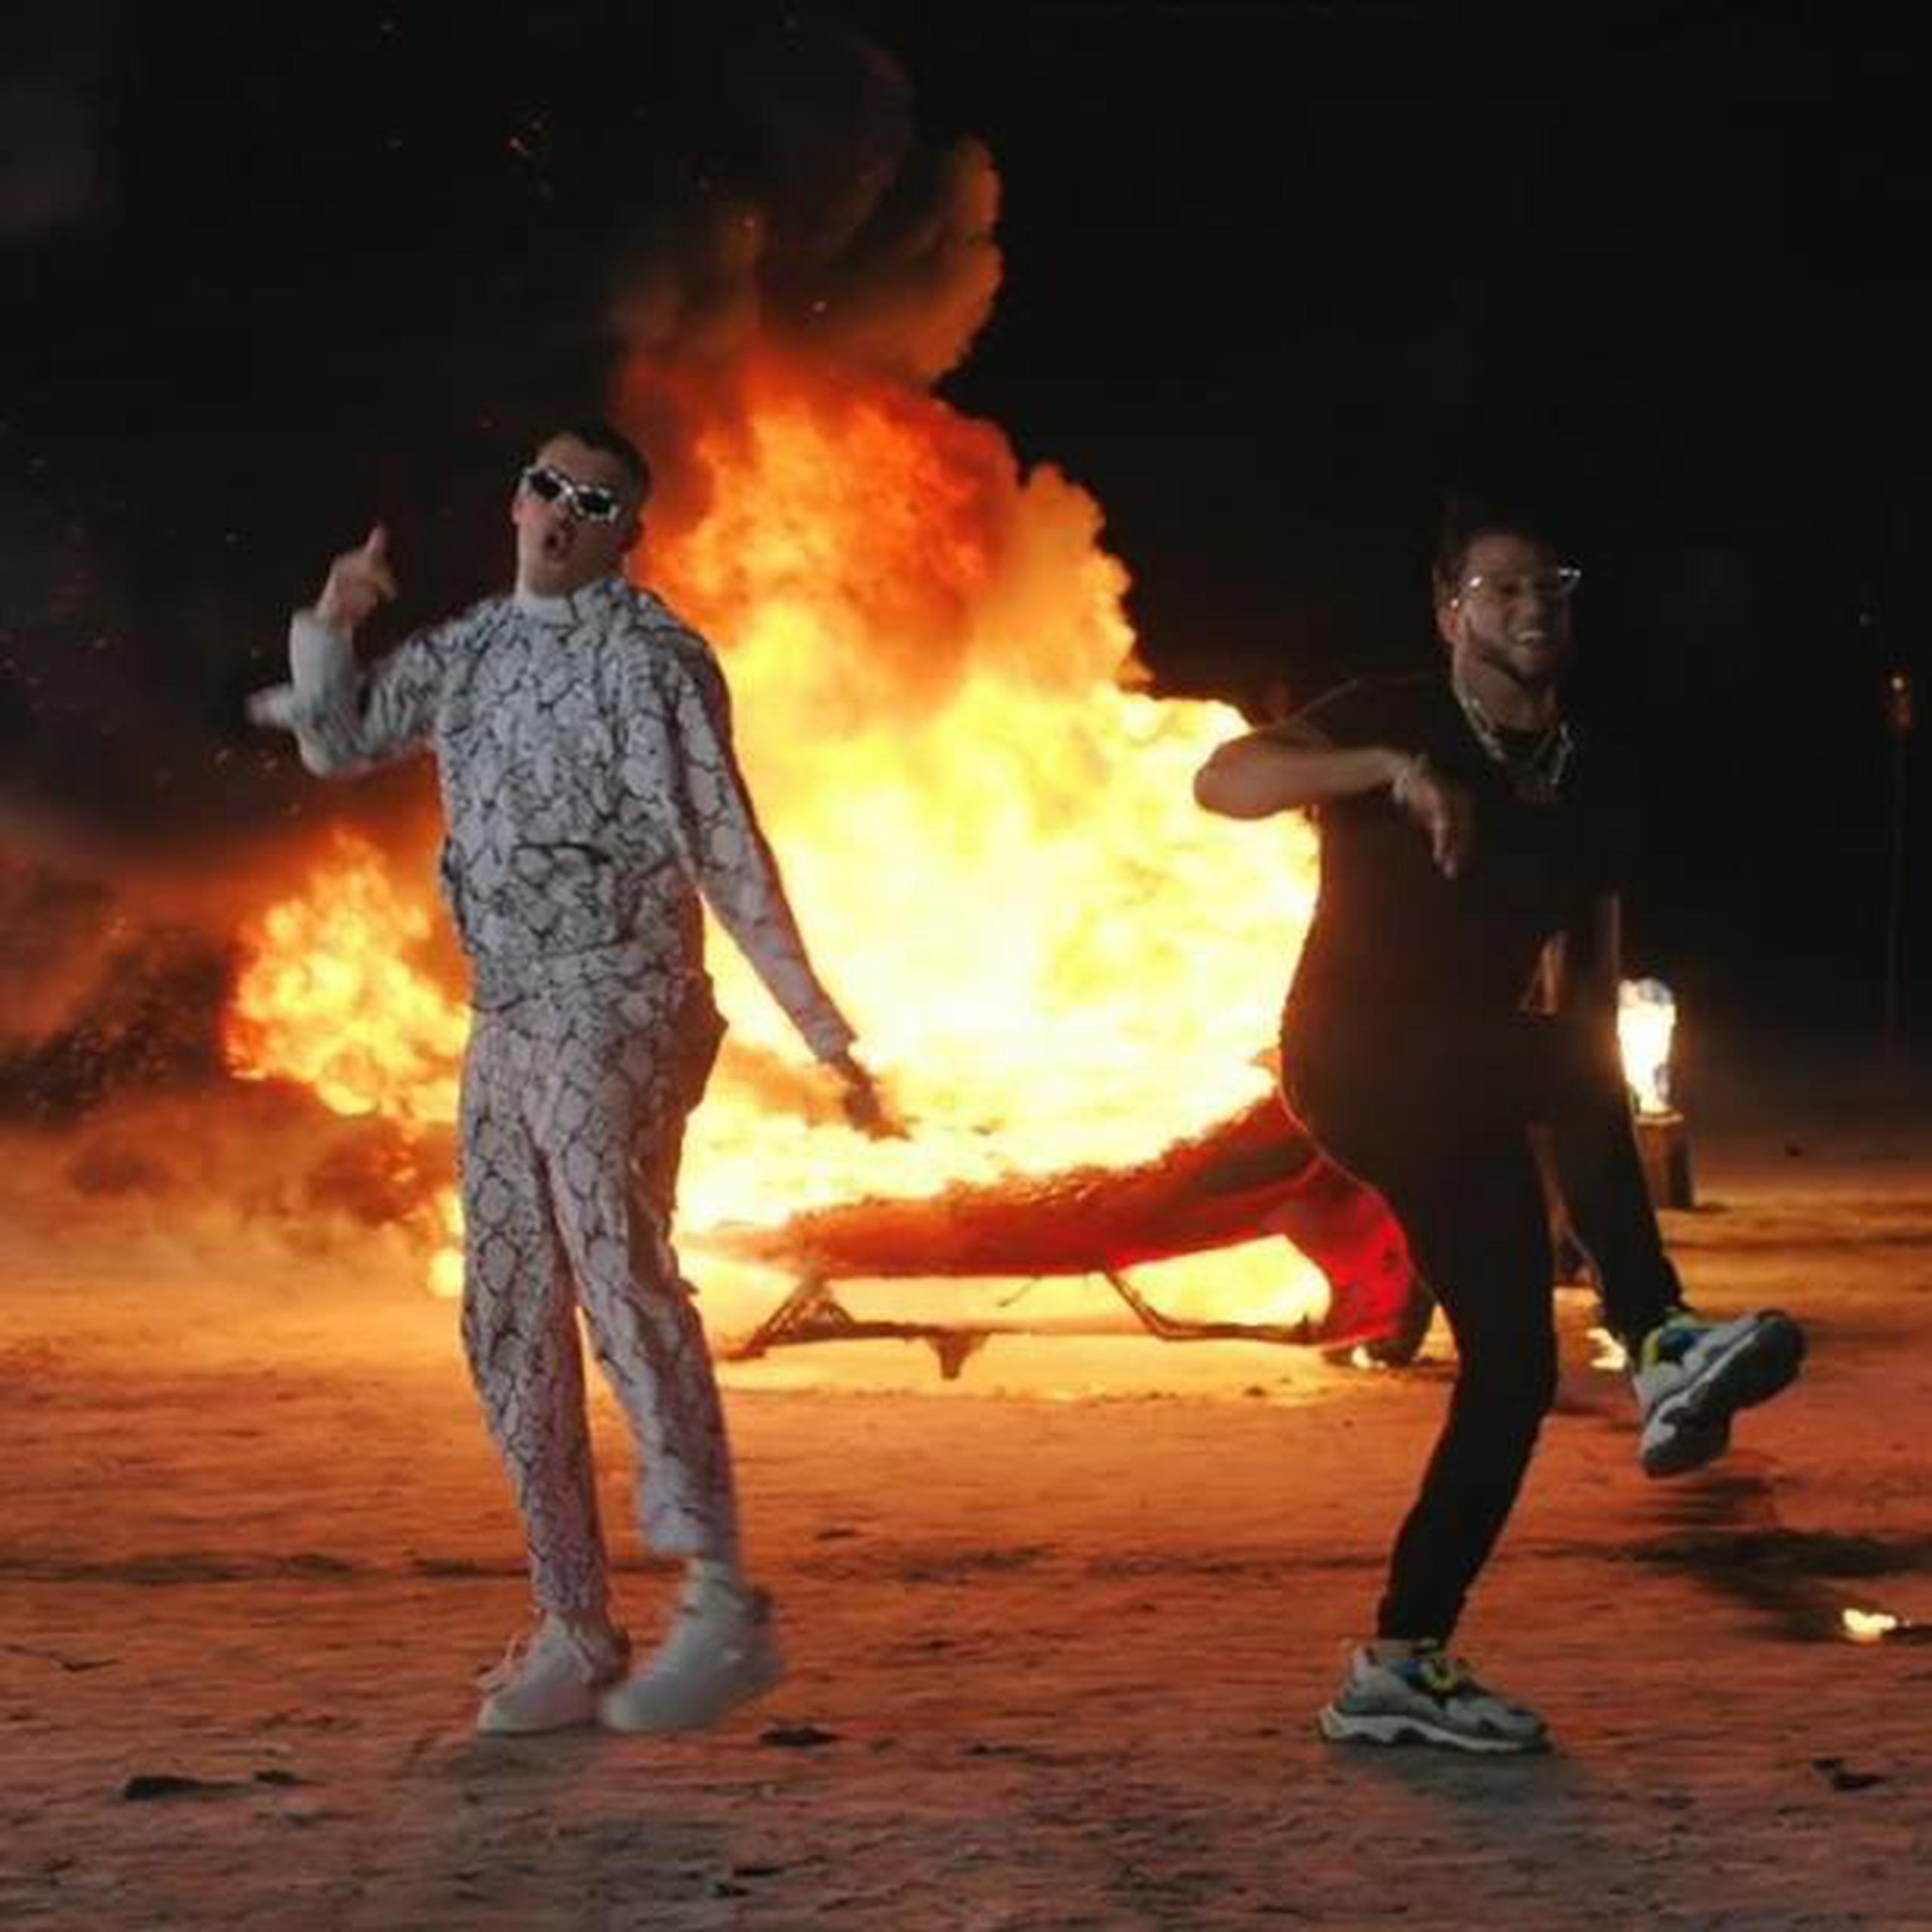 En el vídeo de "La Romana", Bad Bunny y El Alfa cantan y bailan rodeados de llamas. (YouTube / Bad Bunny)